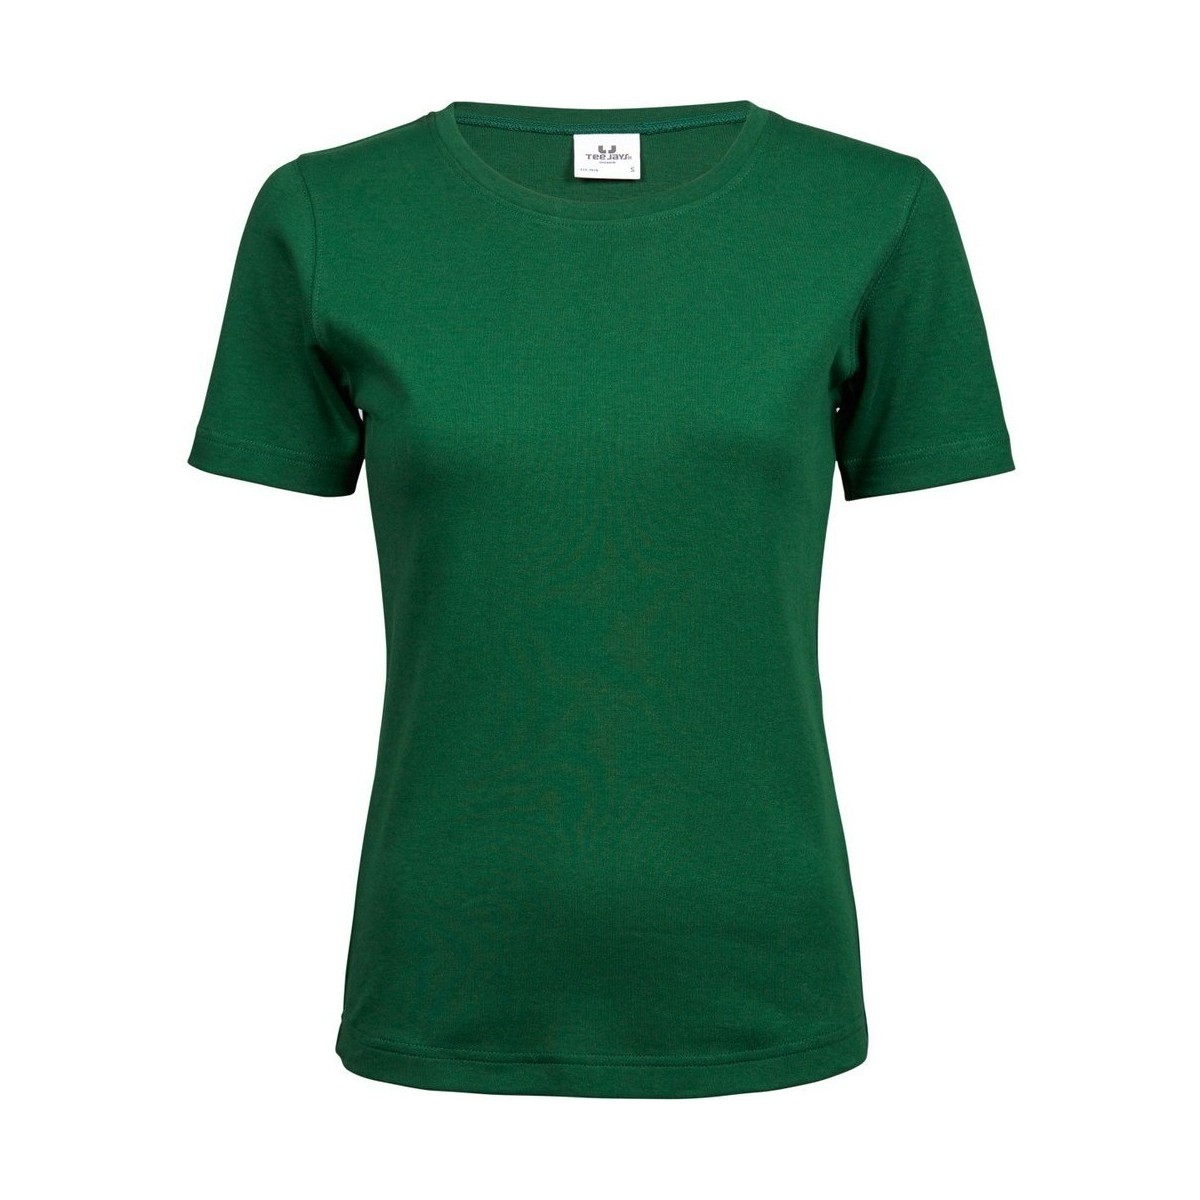 textil Mujer Camisetas manga corta Tee Jays Interlock Verde